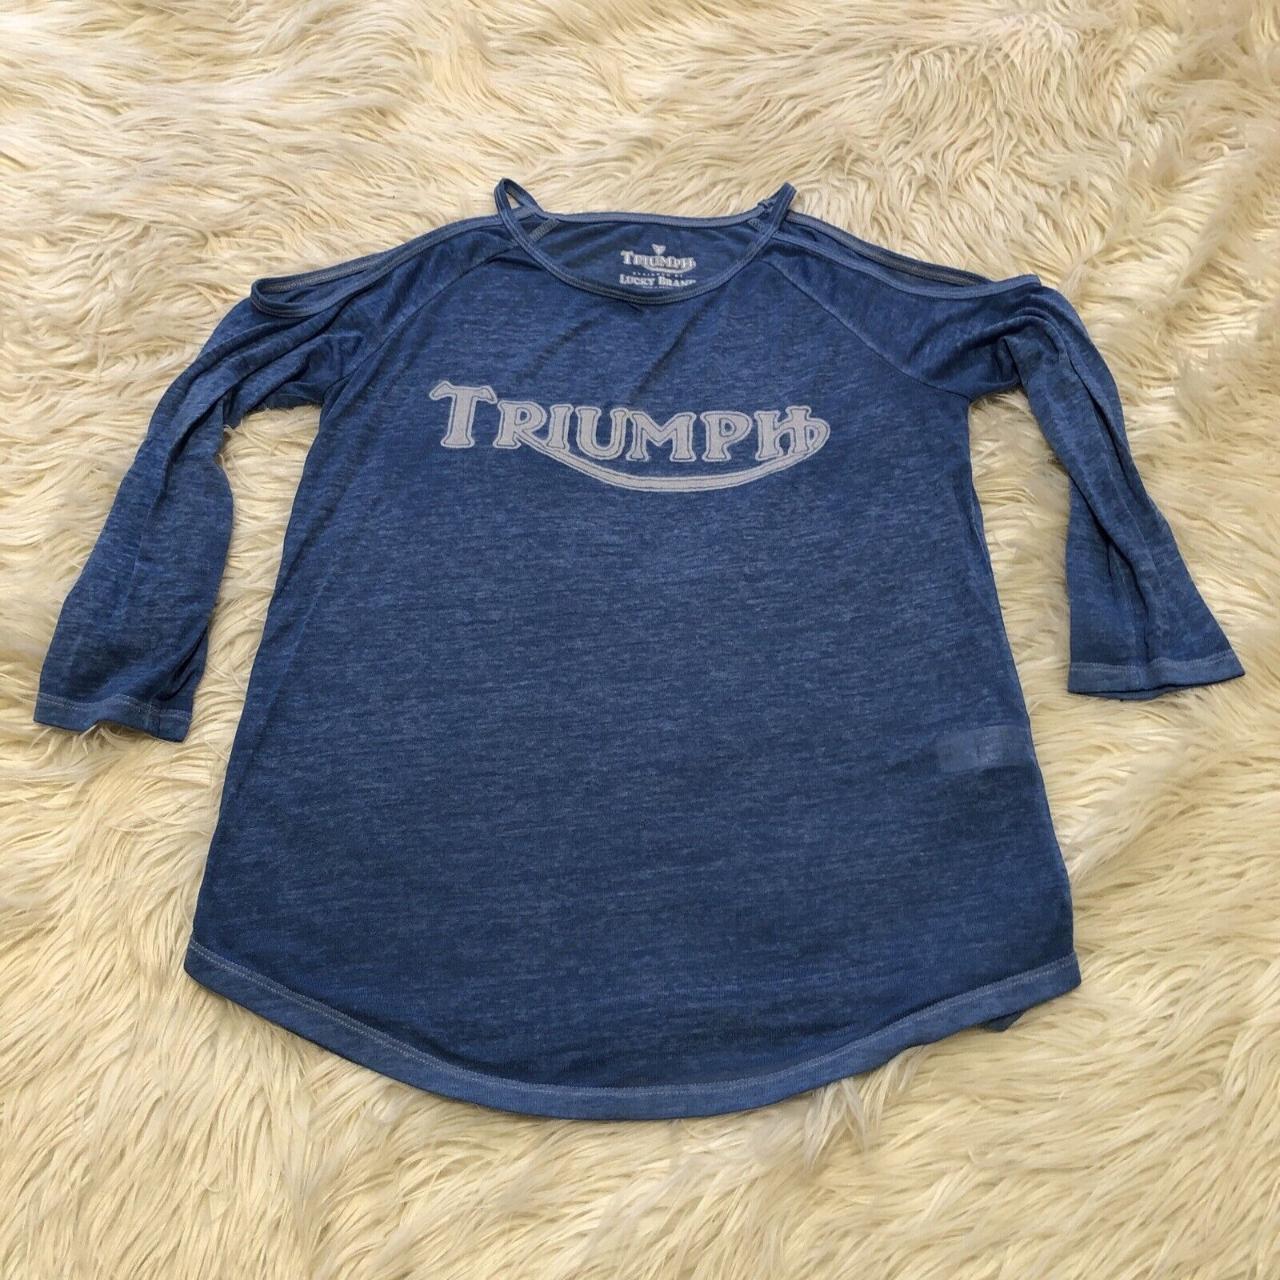 Lucky Brand Triumph 3/4 sleeve t-shirt Size - Depop